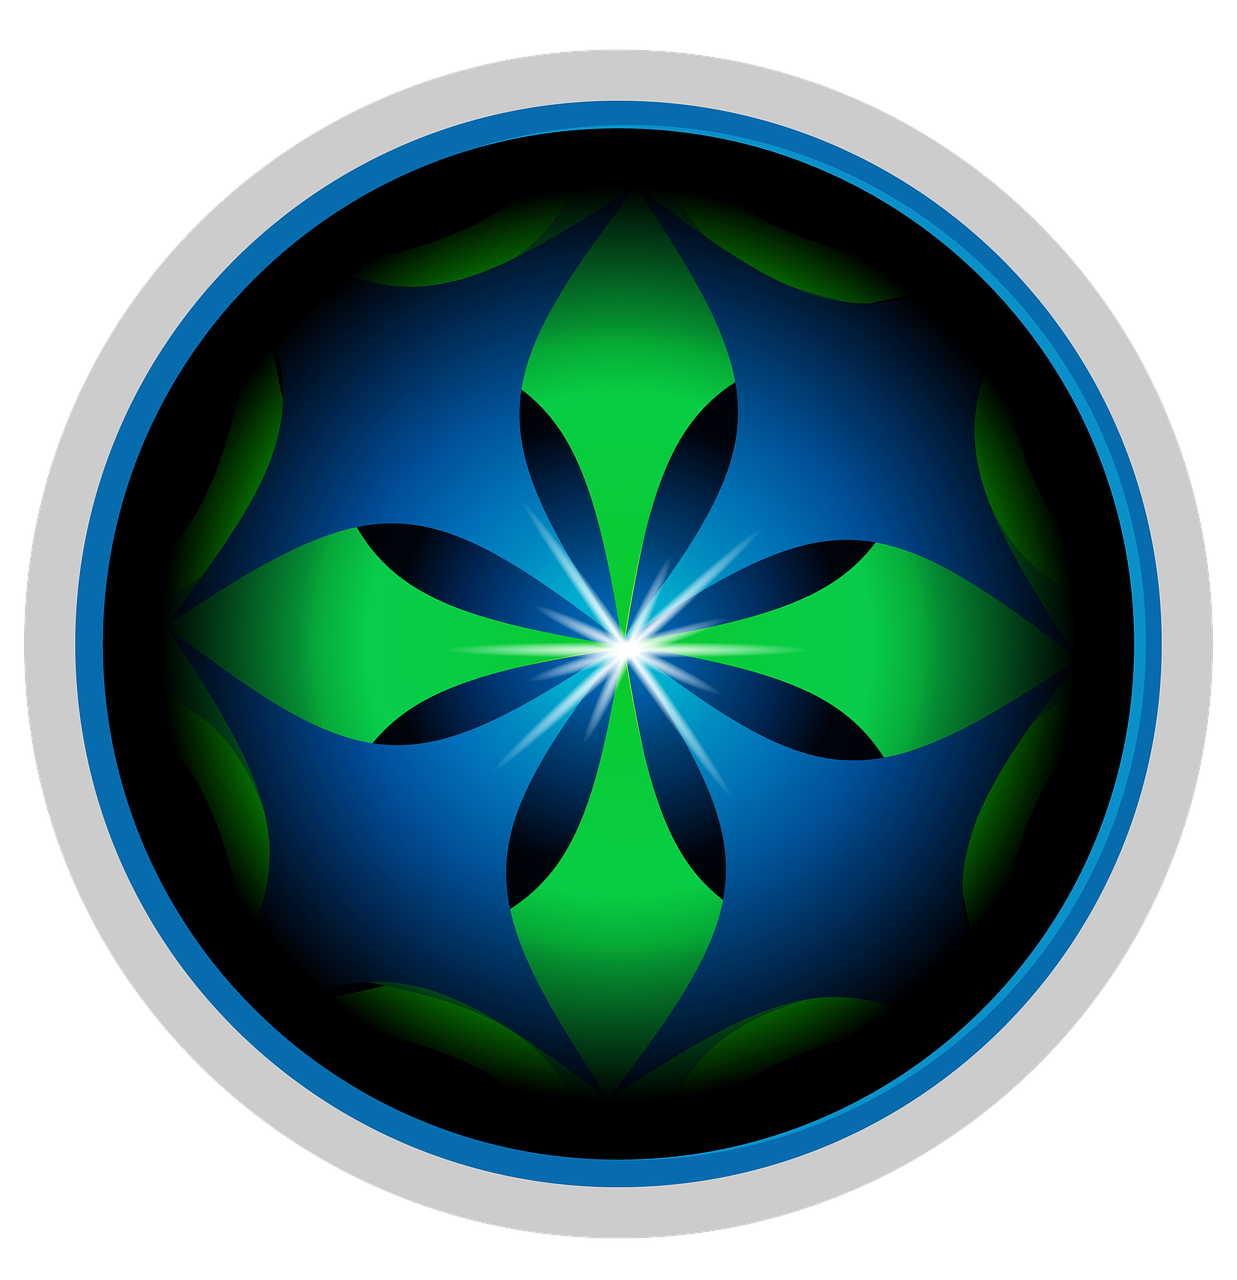 button icon logo free photo